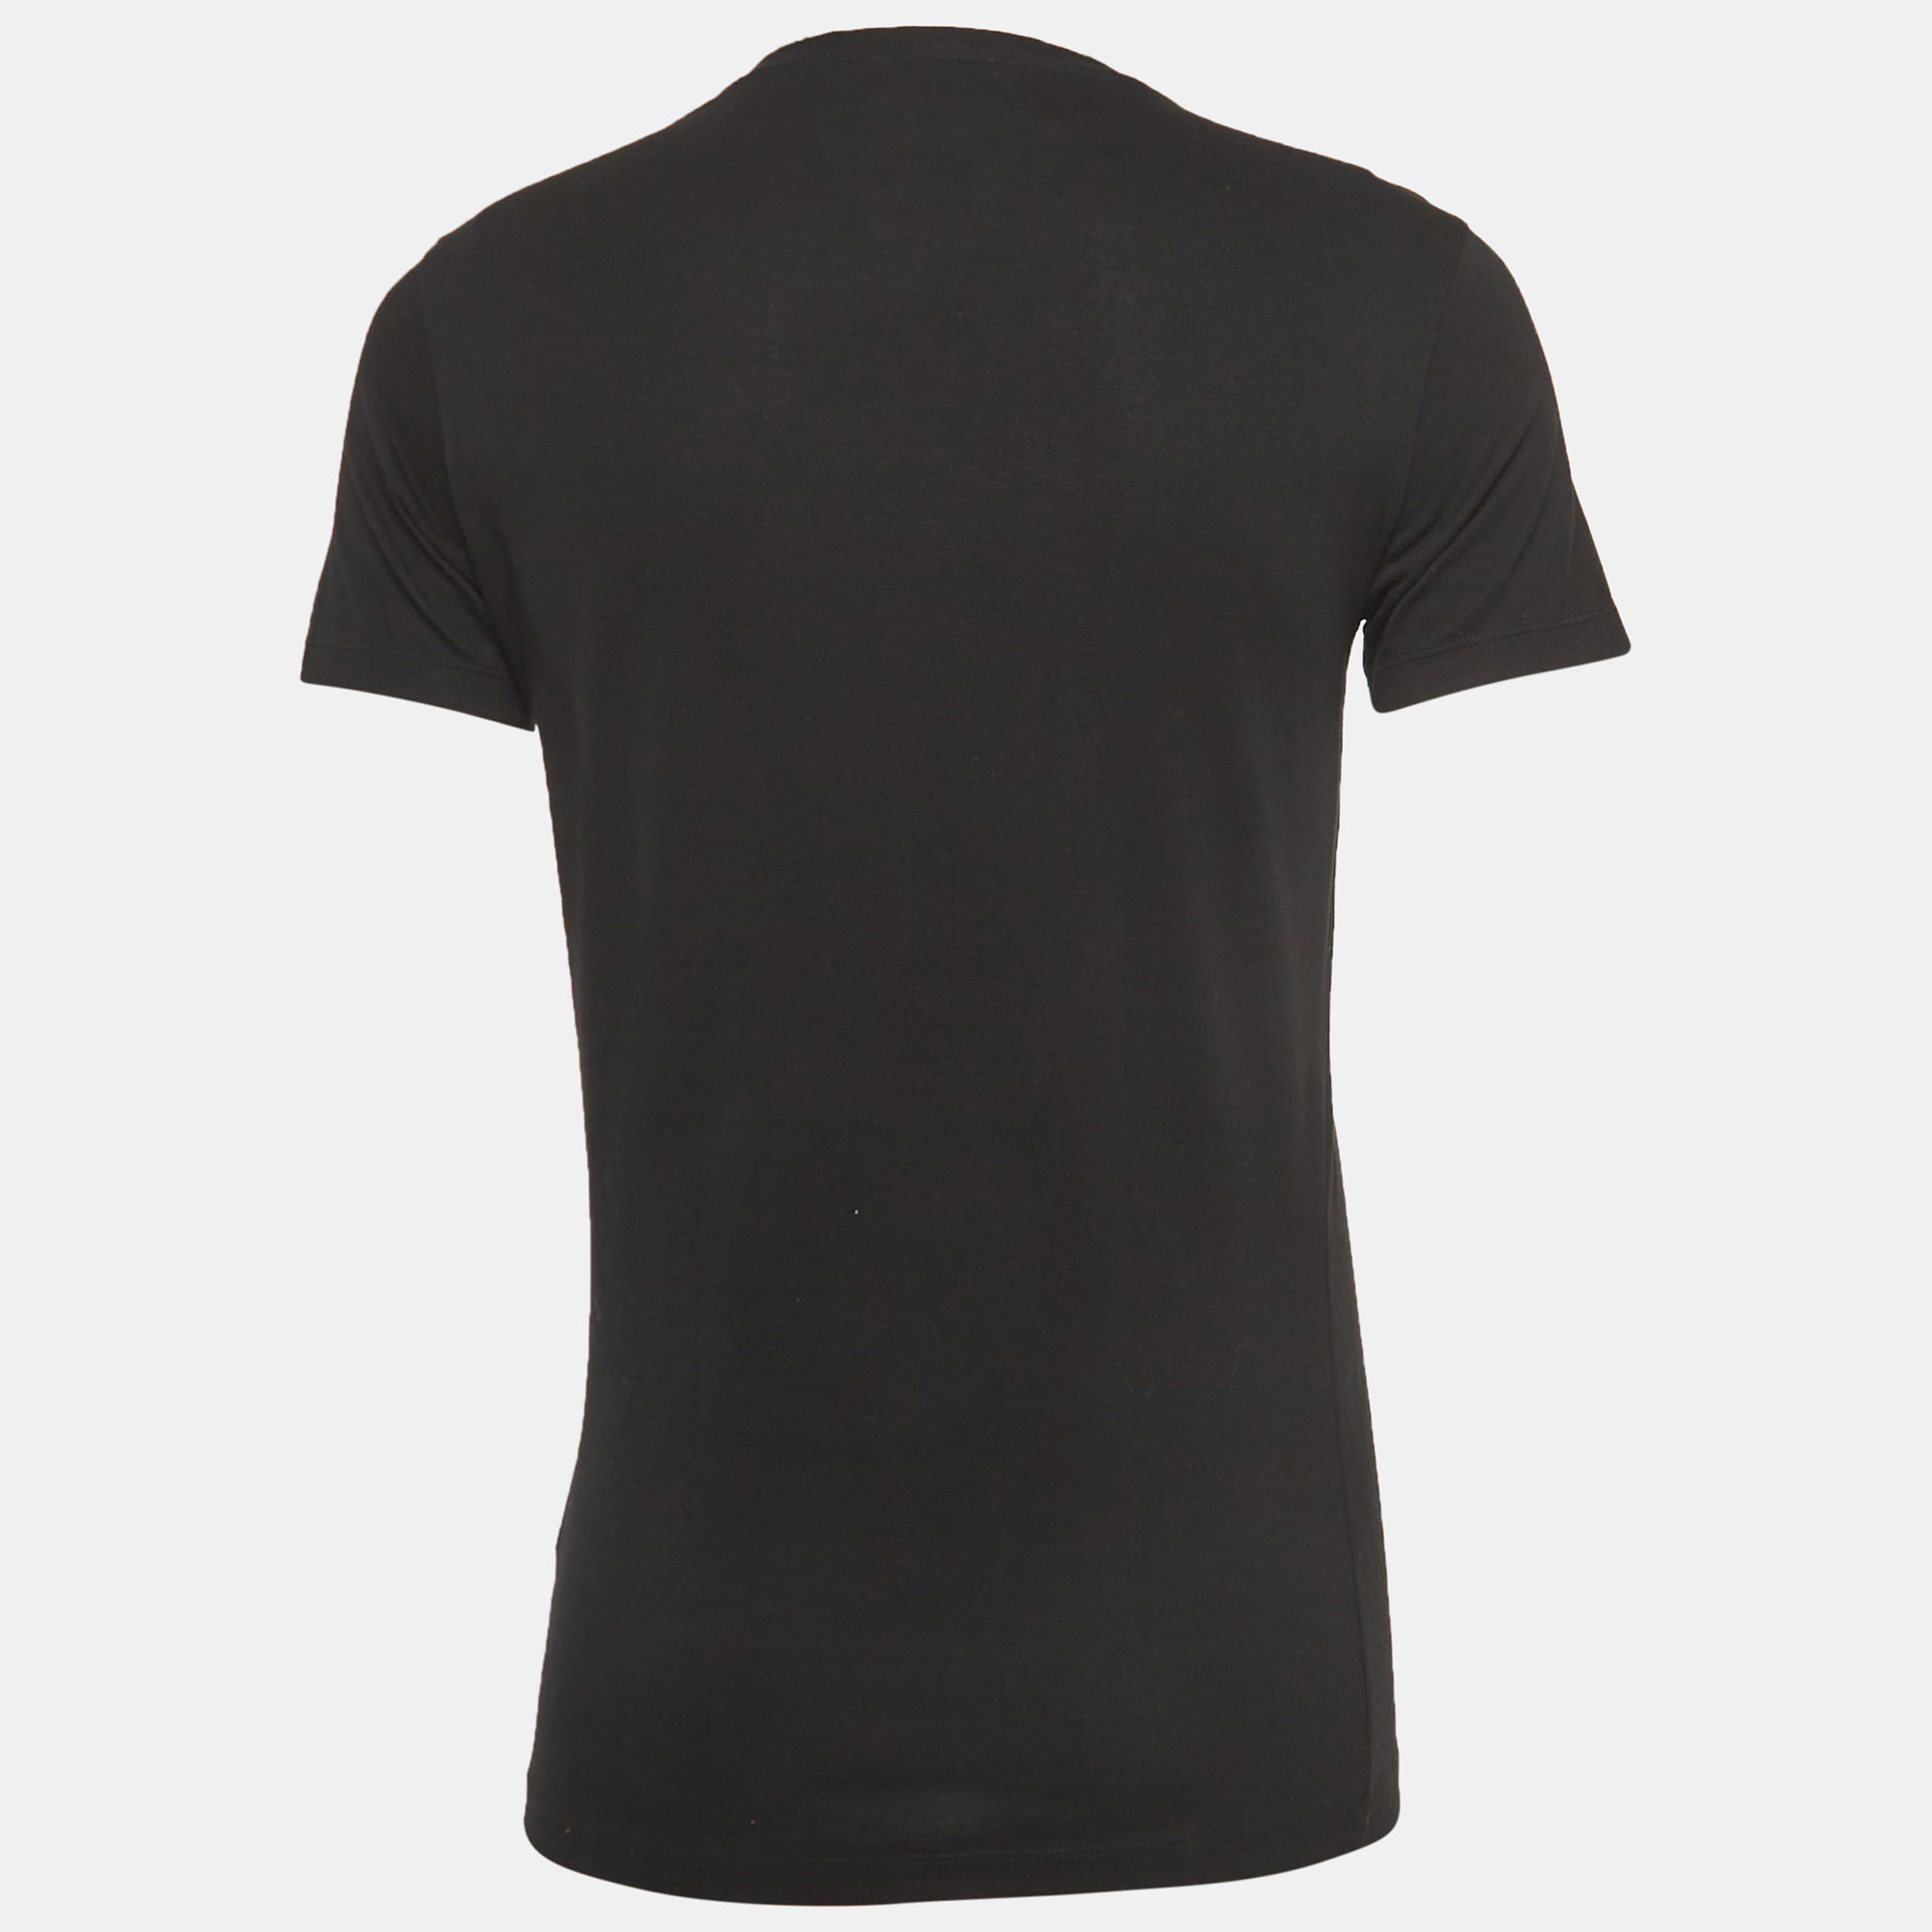 

Emporio Armani Black Logo Print Cotton Crew Neck T-Shirt